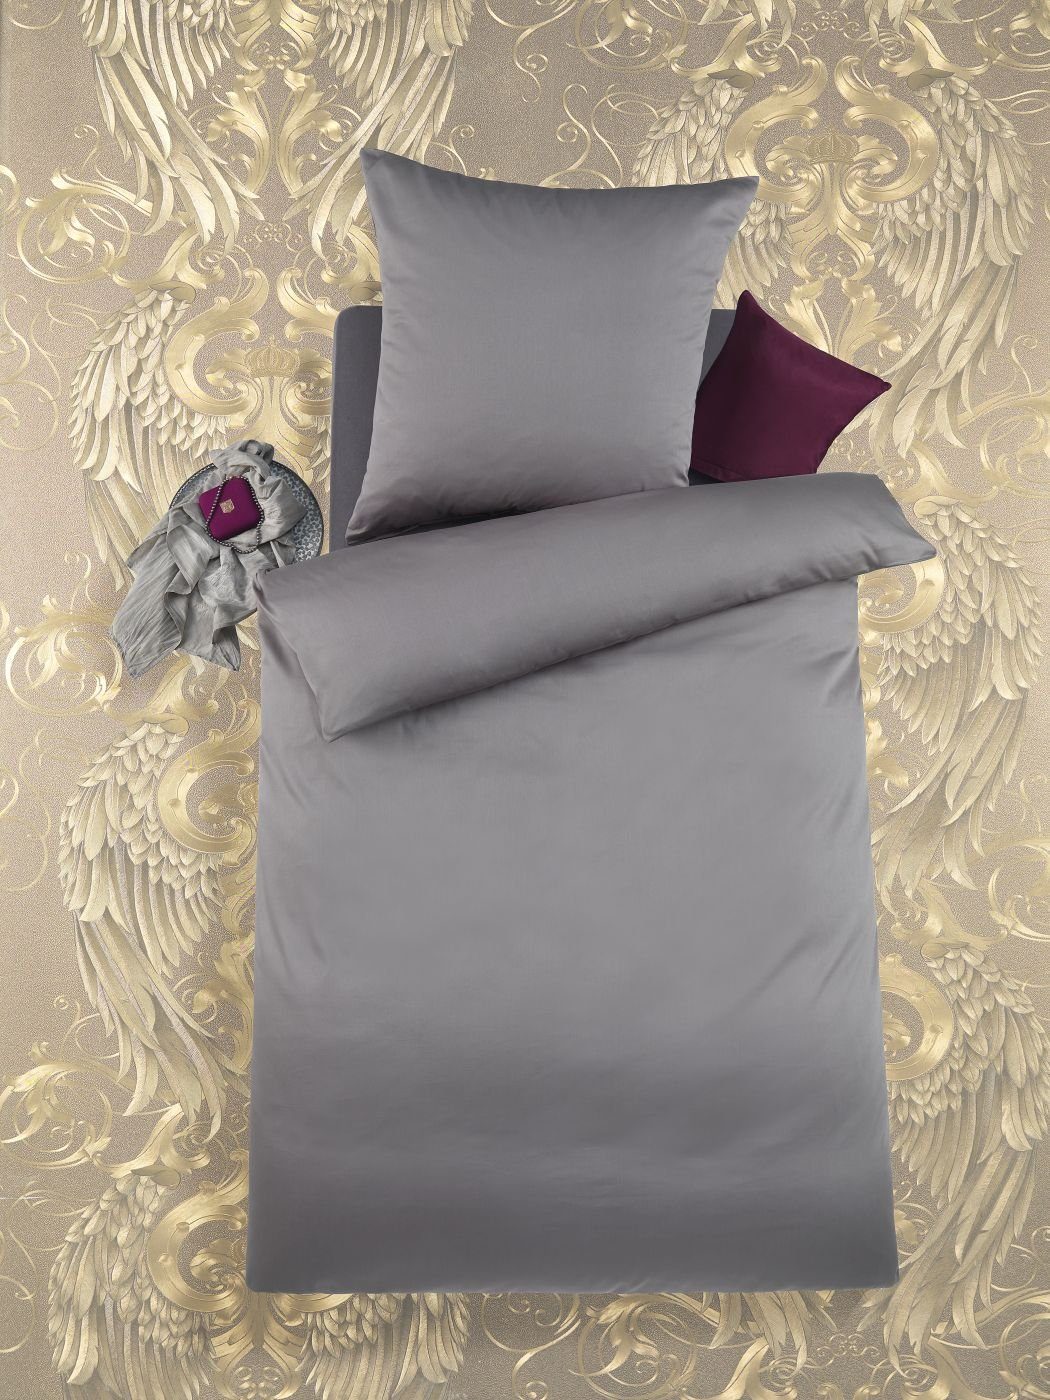 Bettwäsche Mako Satin 135 cm x 200 cm grau, Optidream, Baumolle, 2 teilig,  Bettbezug Kopfkissenbezug Set kuschelig weich hochwertig